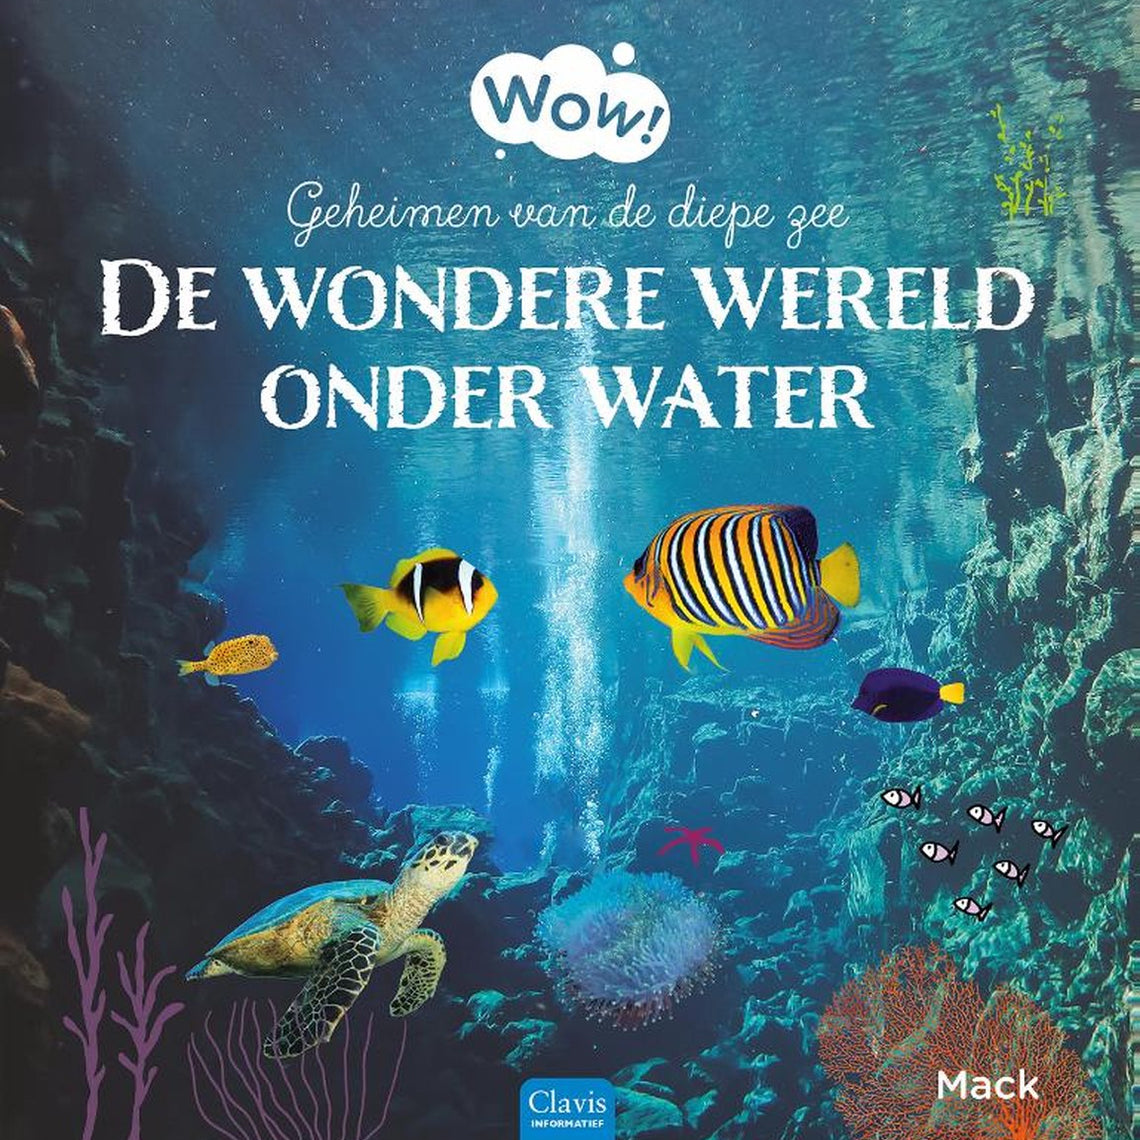 WOW! Wondere wereld onder water - Mack Van Gageldonk